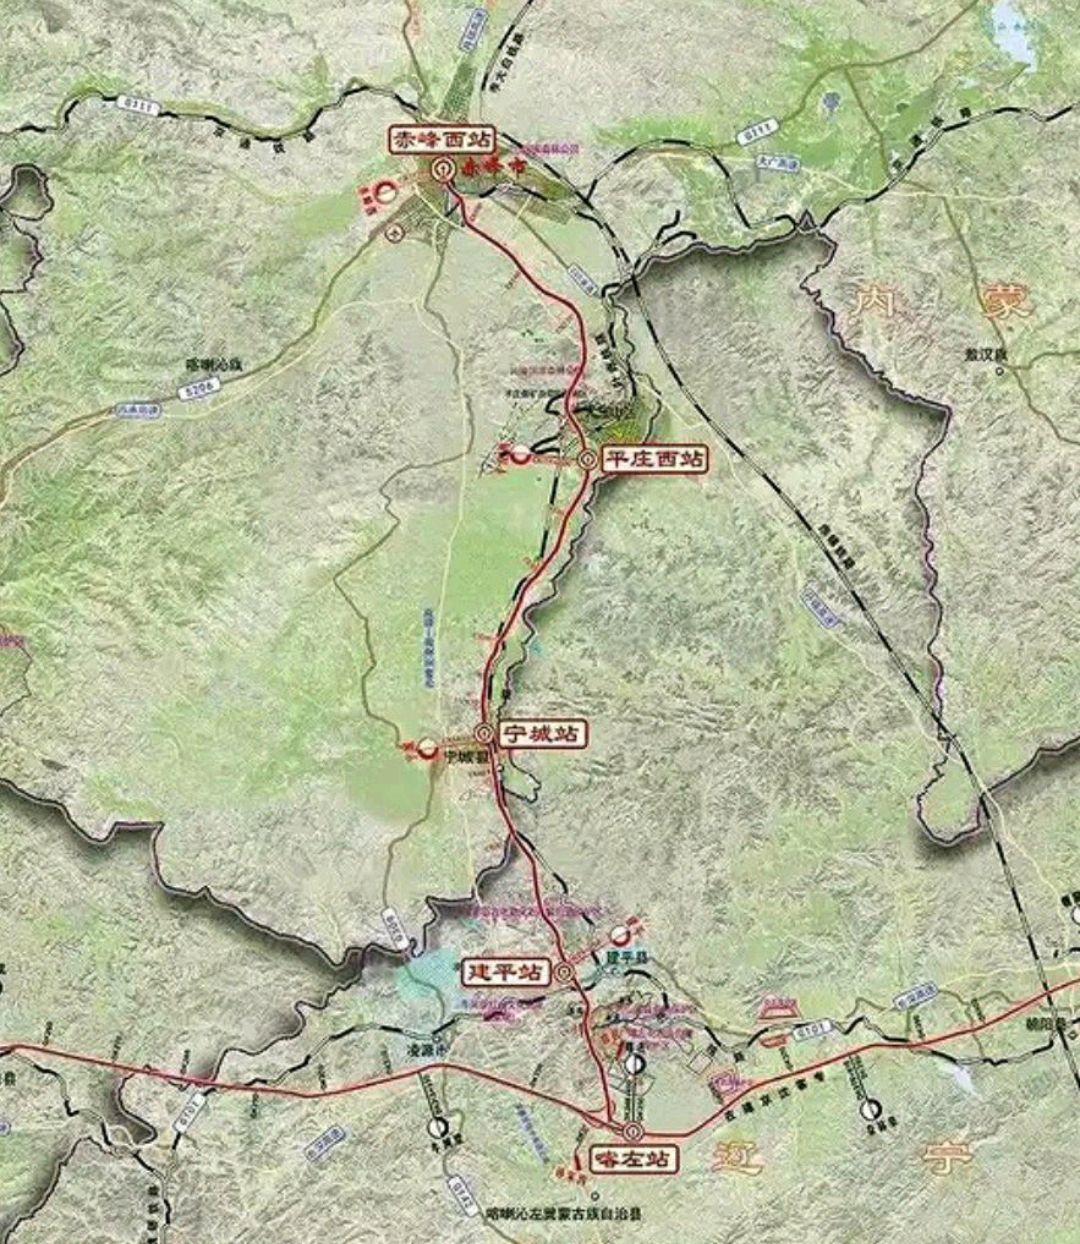 朝阳市到赤峰市新增一条高铁线路,时速为250公里,全长为165公里